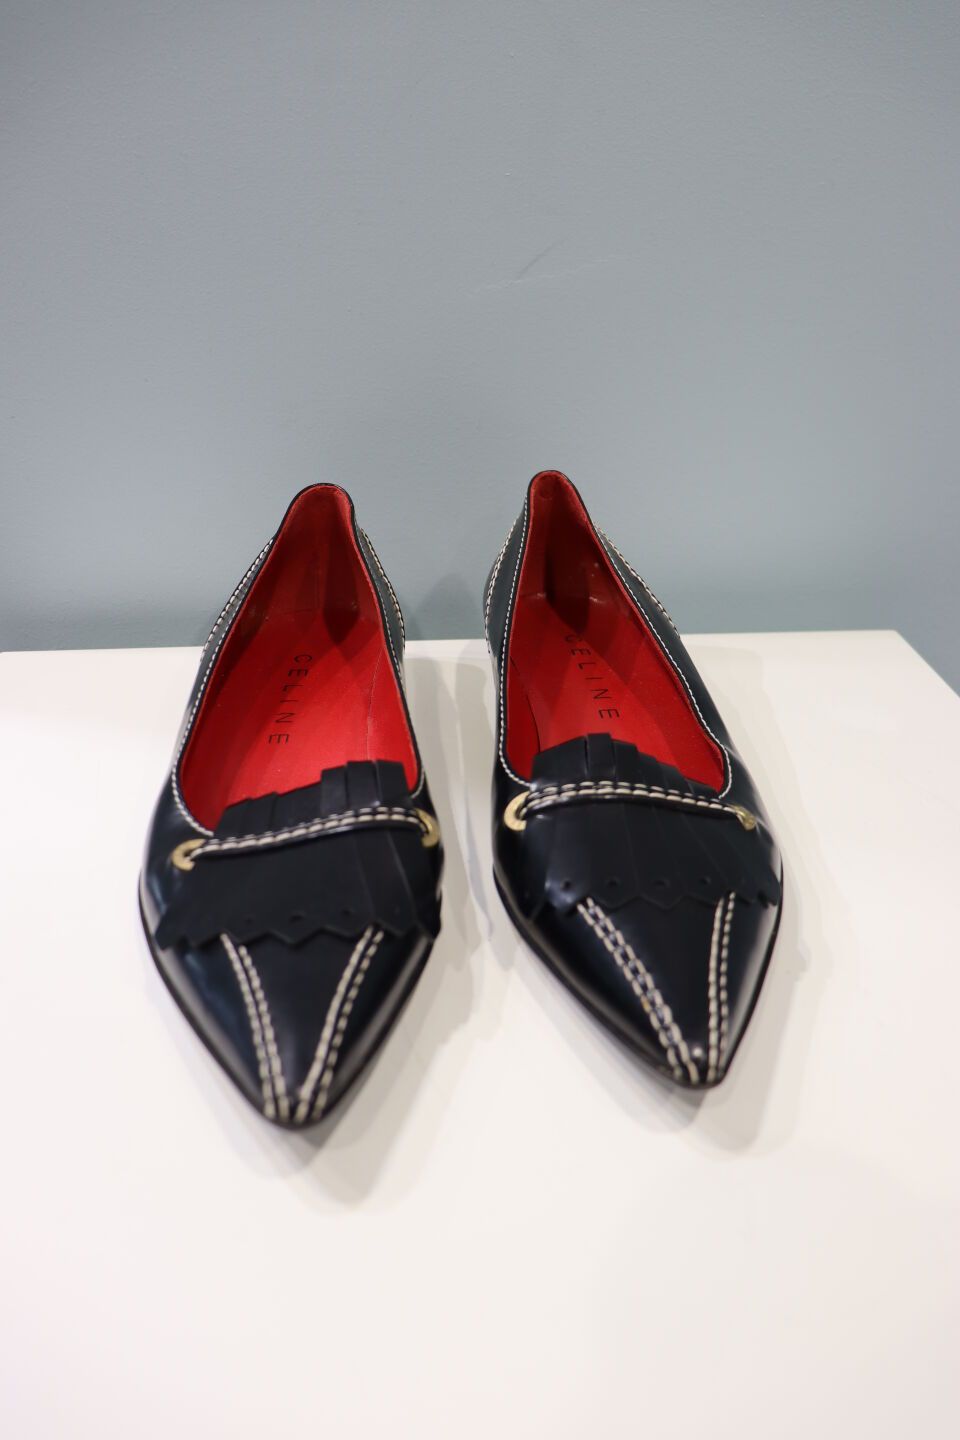 Null CELINE - Paio di scarpe da donna in pelle nera, interno rosso, misura 38. B&hellip;